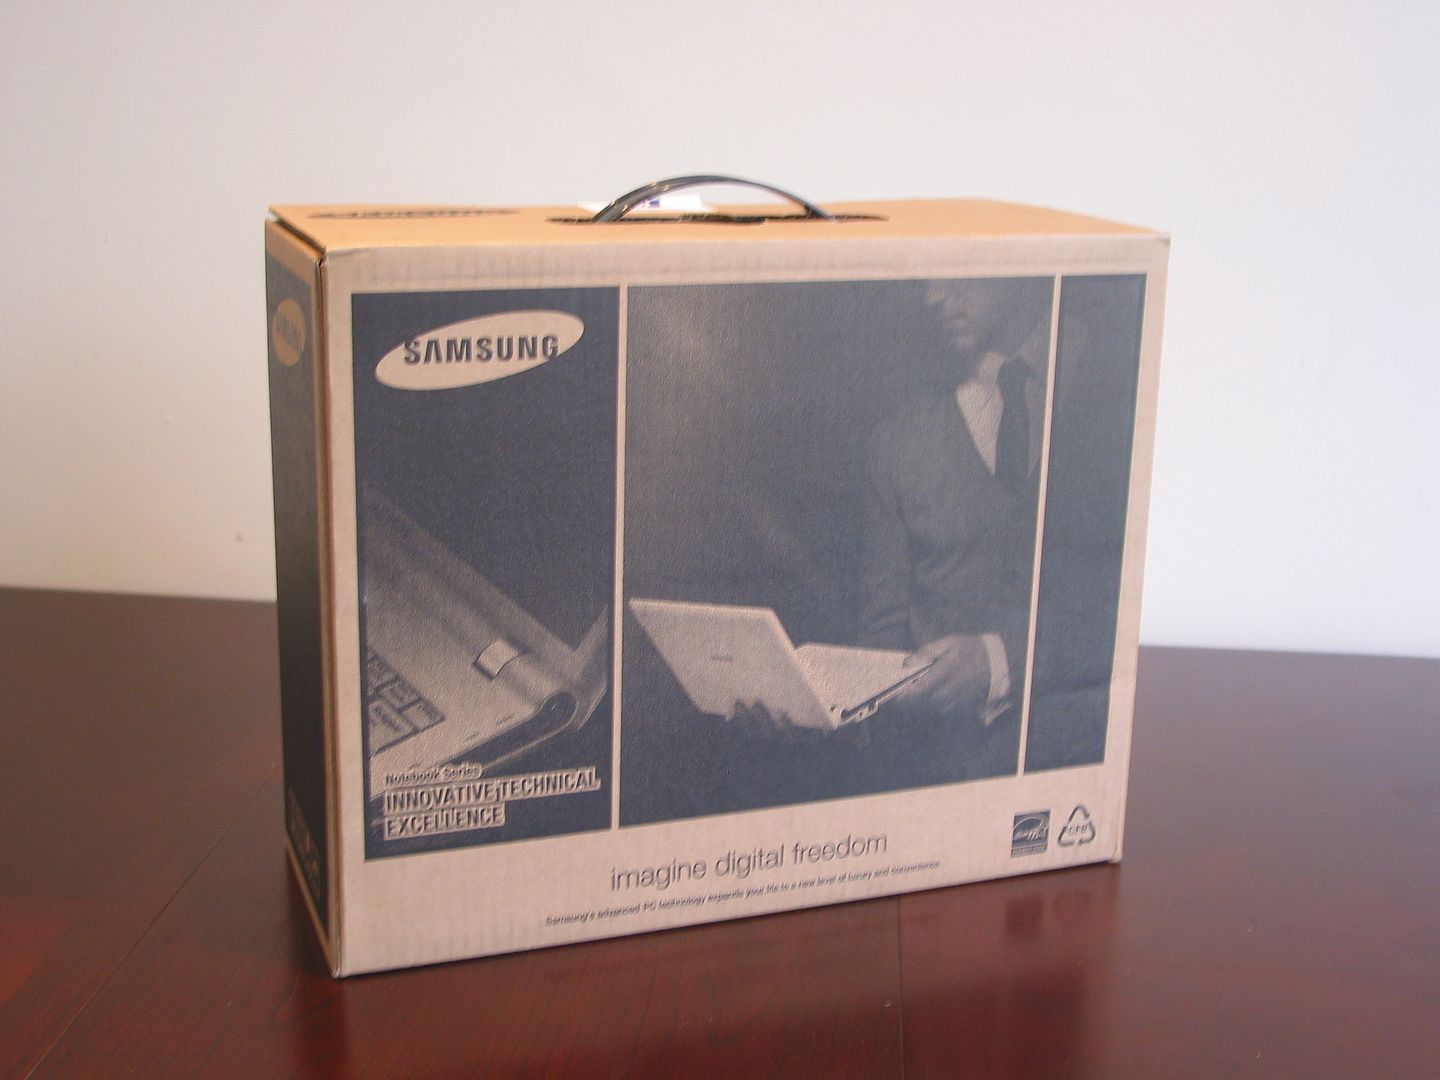 Samsung N510 netbook unboxed